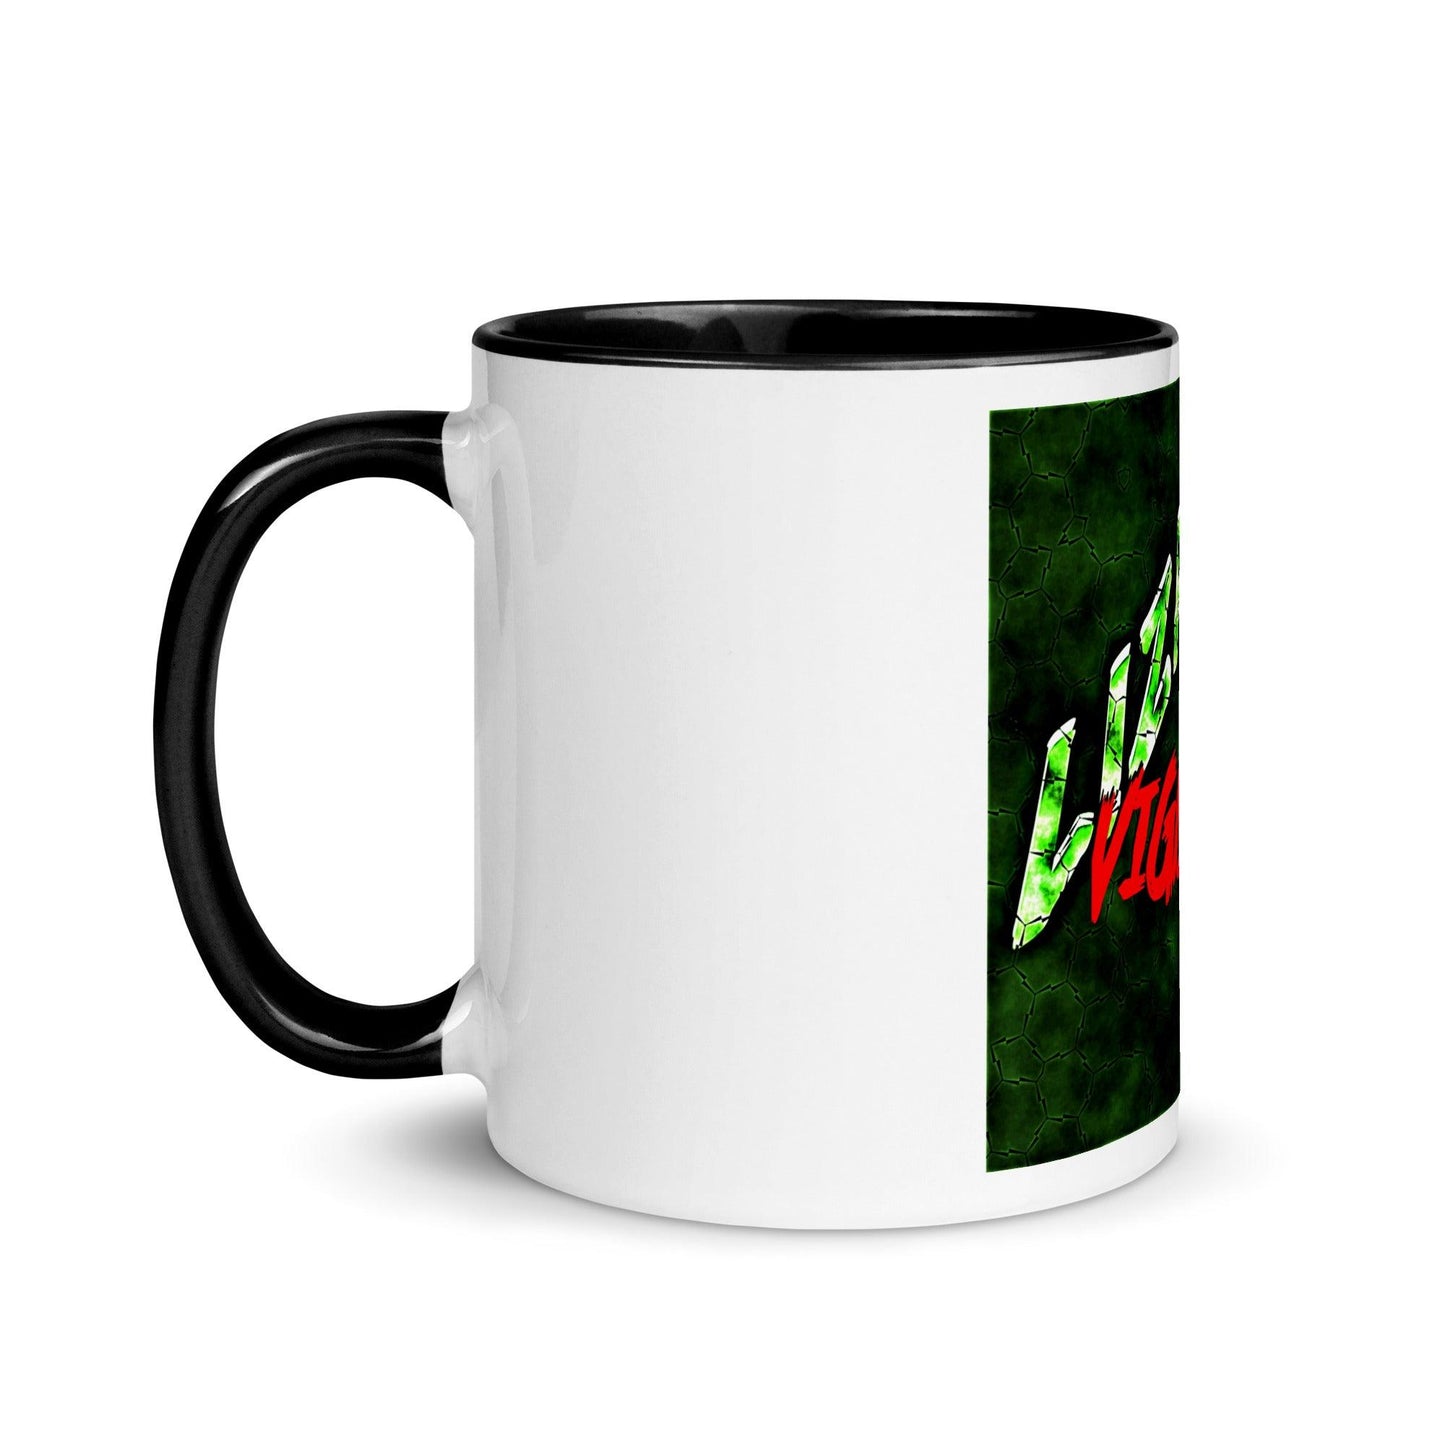 Green Lizard Vigilante Mug with Black Color Inside / Color-Coded For Your Convenience - Lizard Vigilante